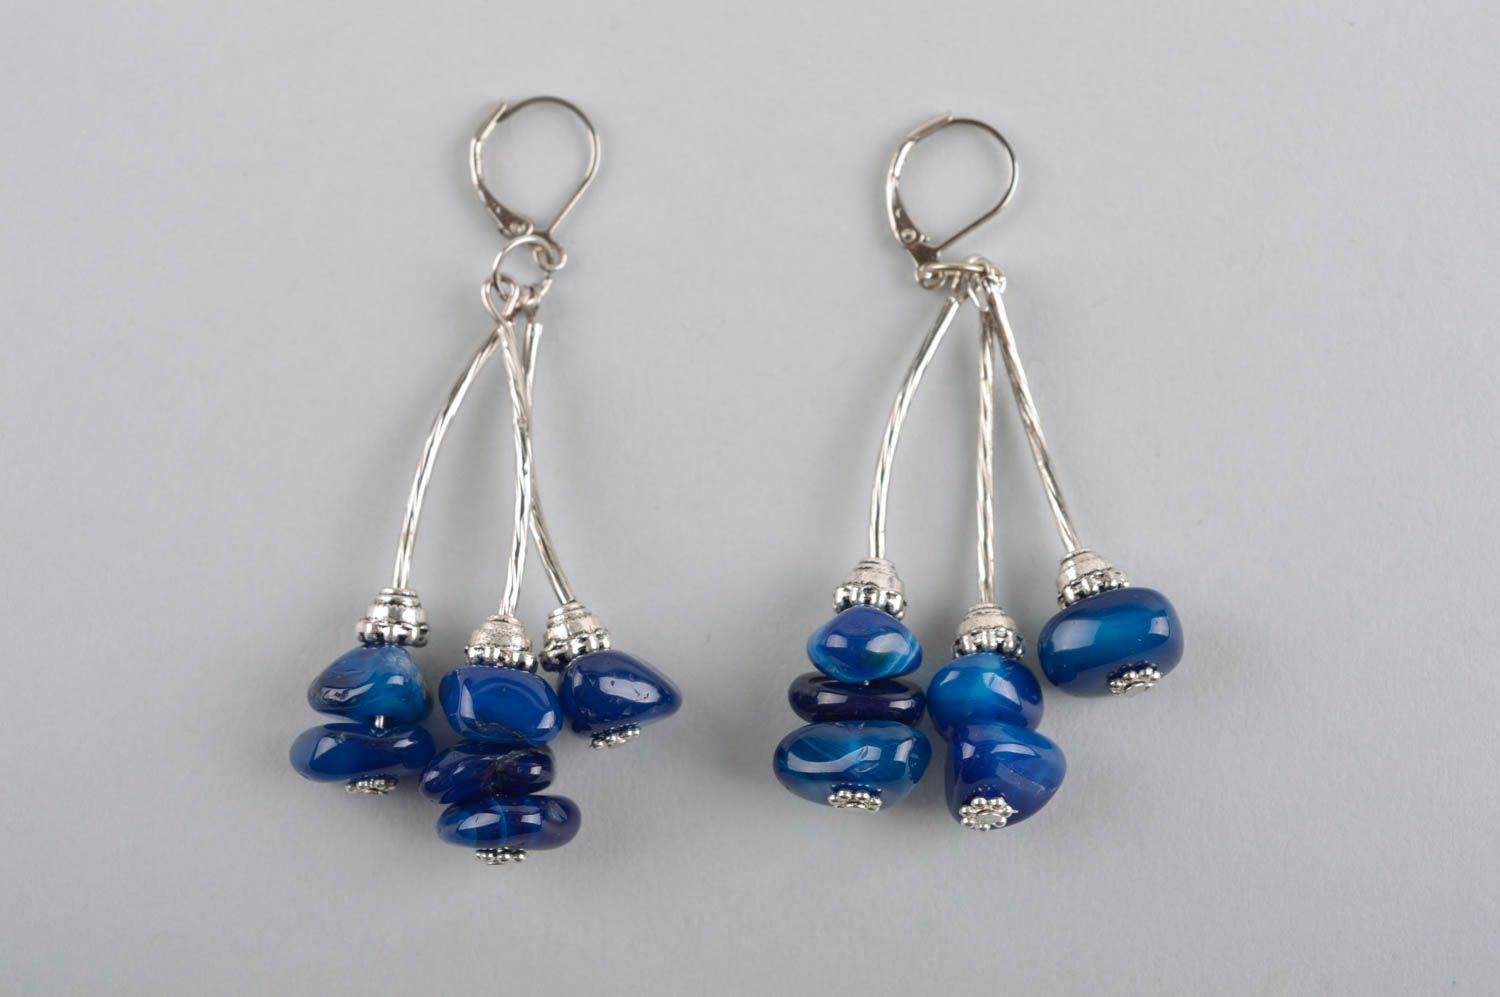 Long earrings handmade jewelry earrings for women stylish earrings gifts for her photo 3